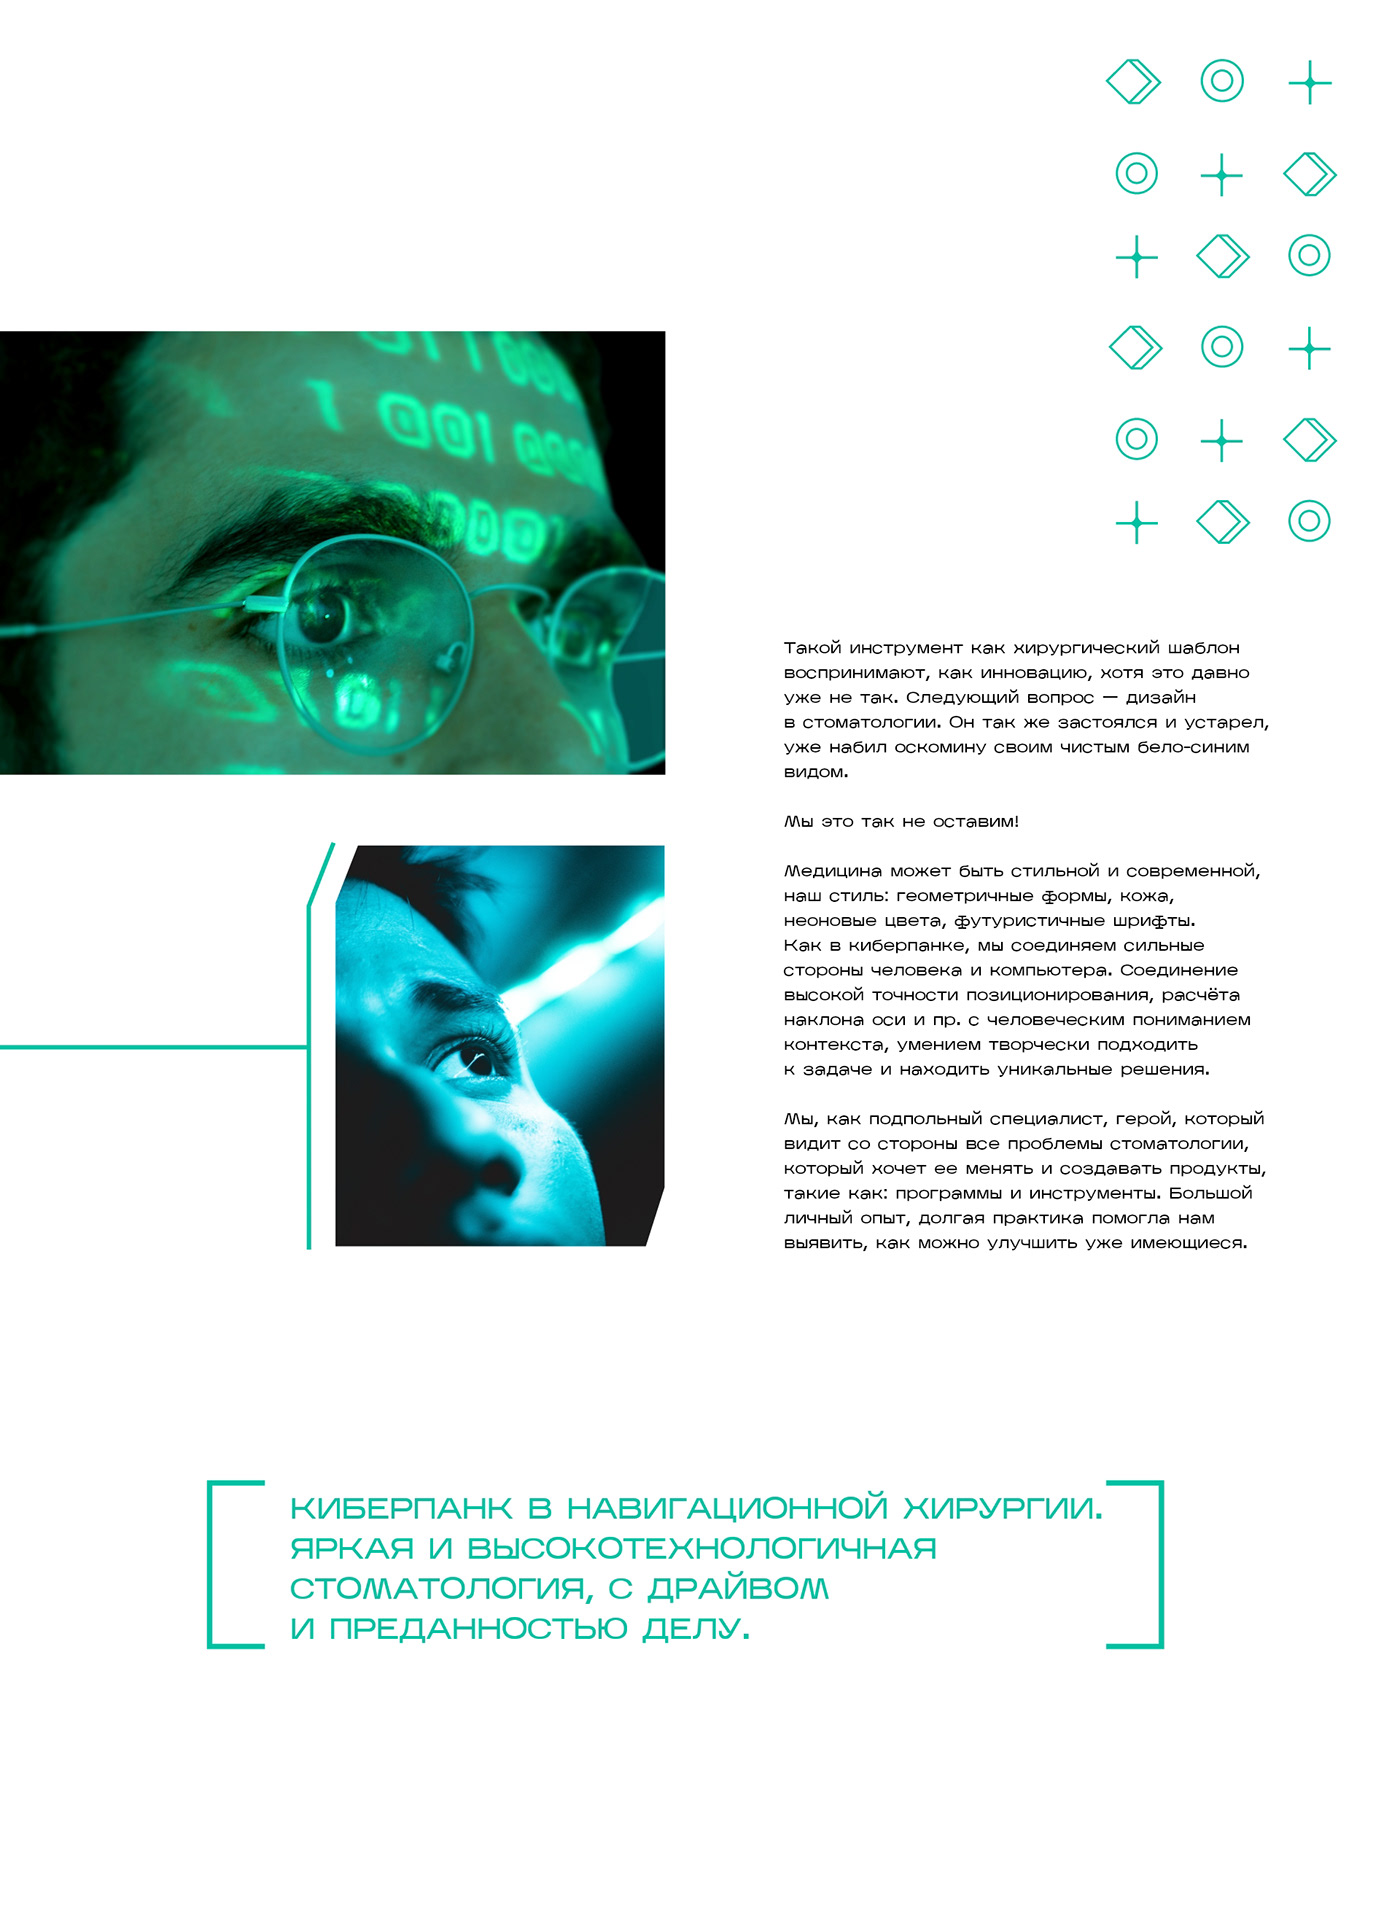 Brand Design Cyberpunk future medicine Packaging science